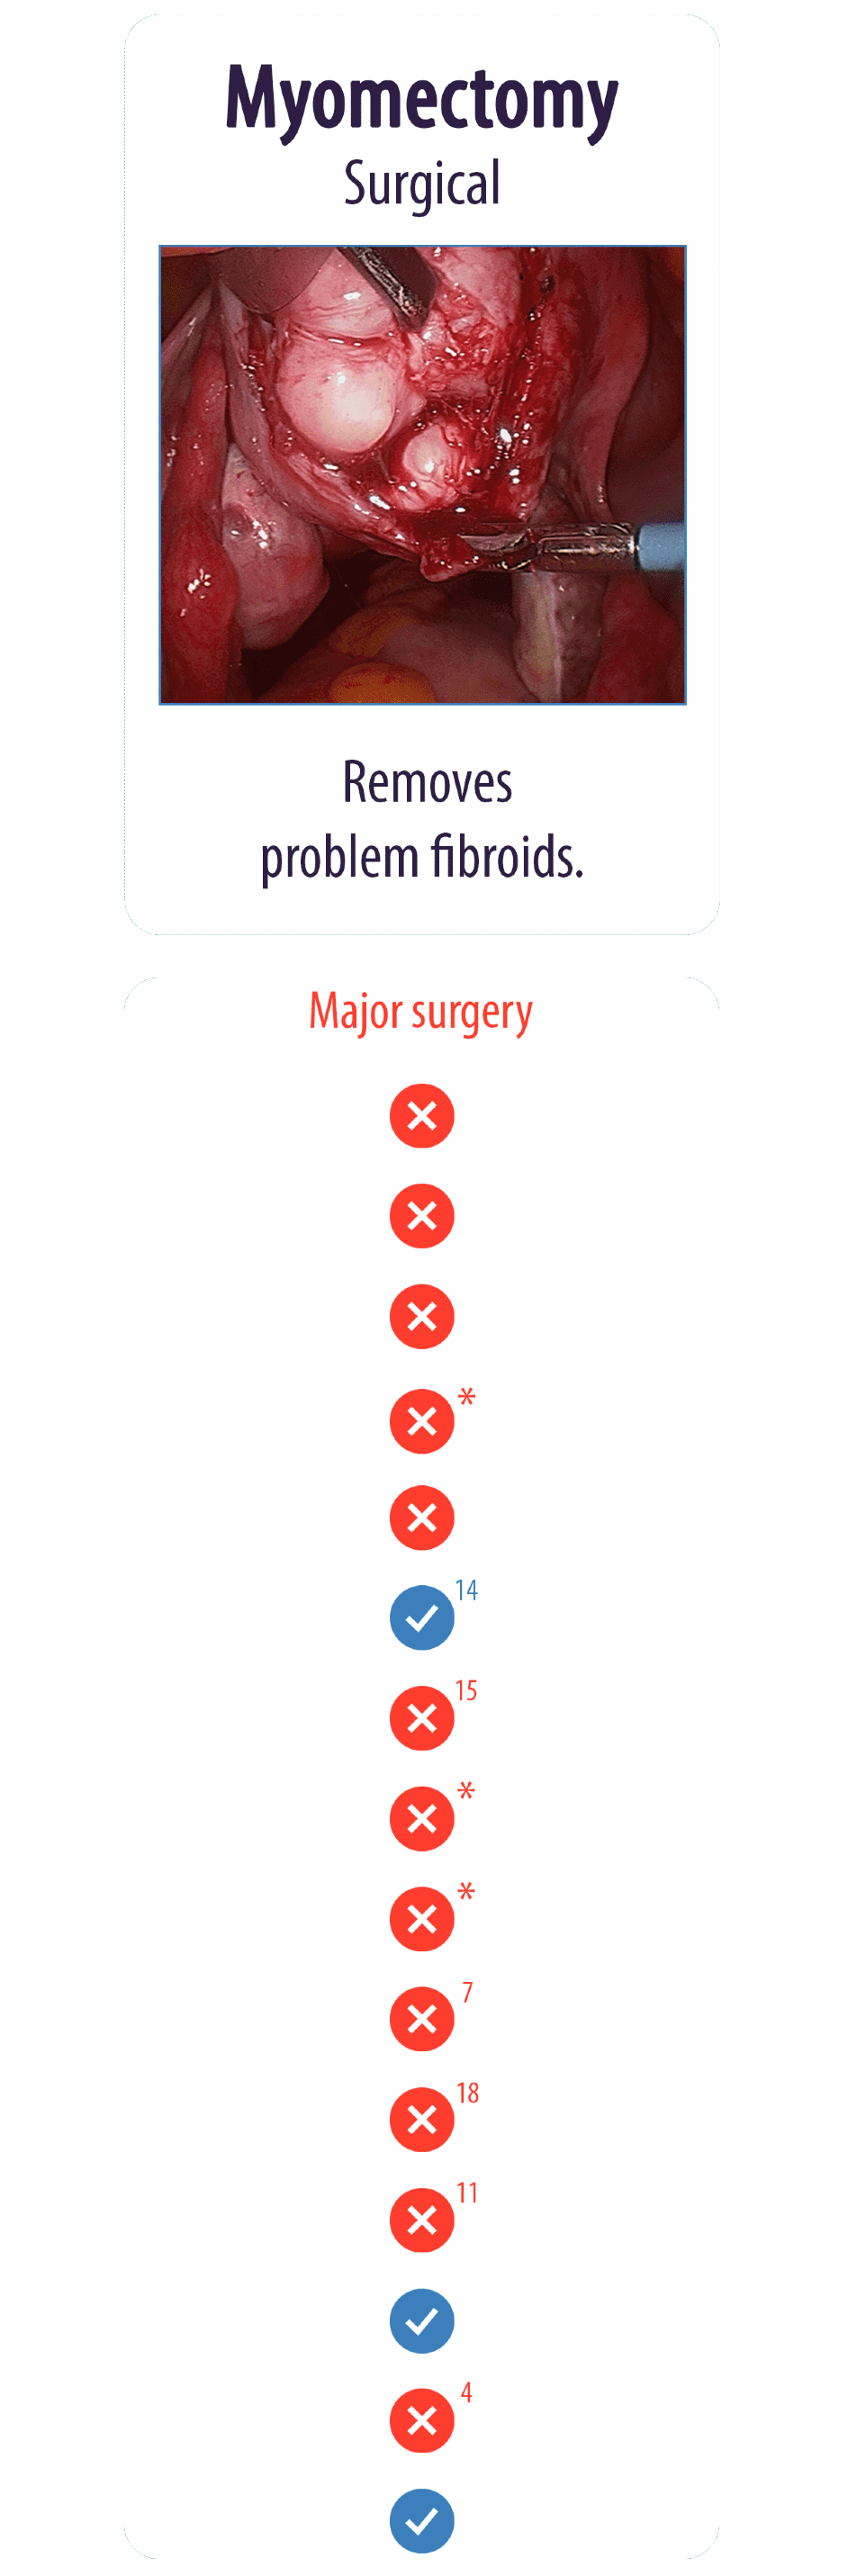 Myomectomy Surgical